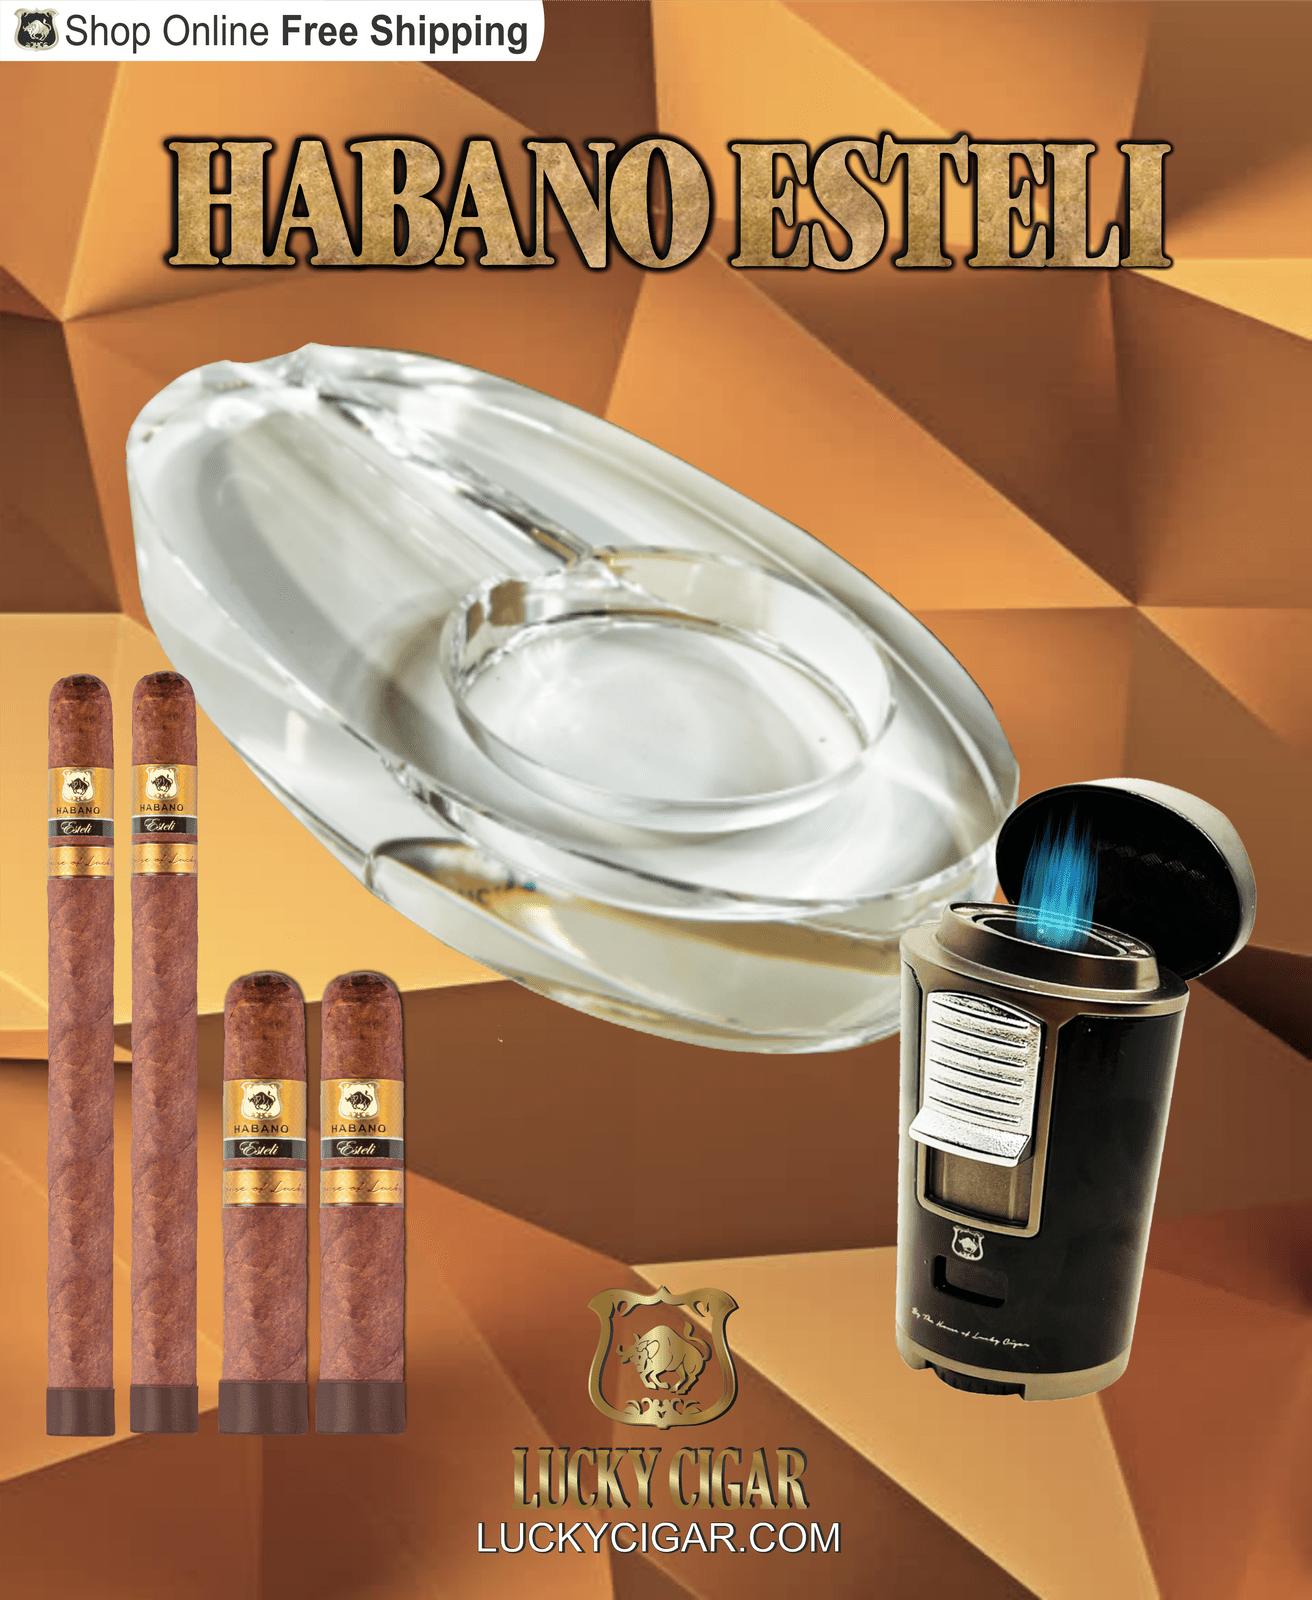 Habano Cigars: Habano Esteli by Lucky Cigar: Set of 4 Cigars, 2 Churchill, 2 Robusto with Ashtray, Torch